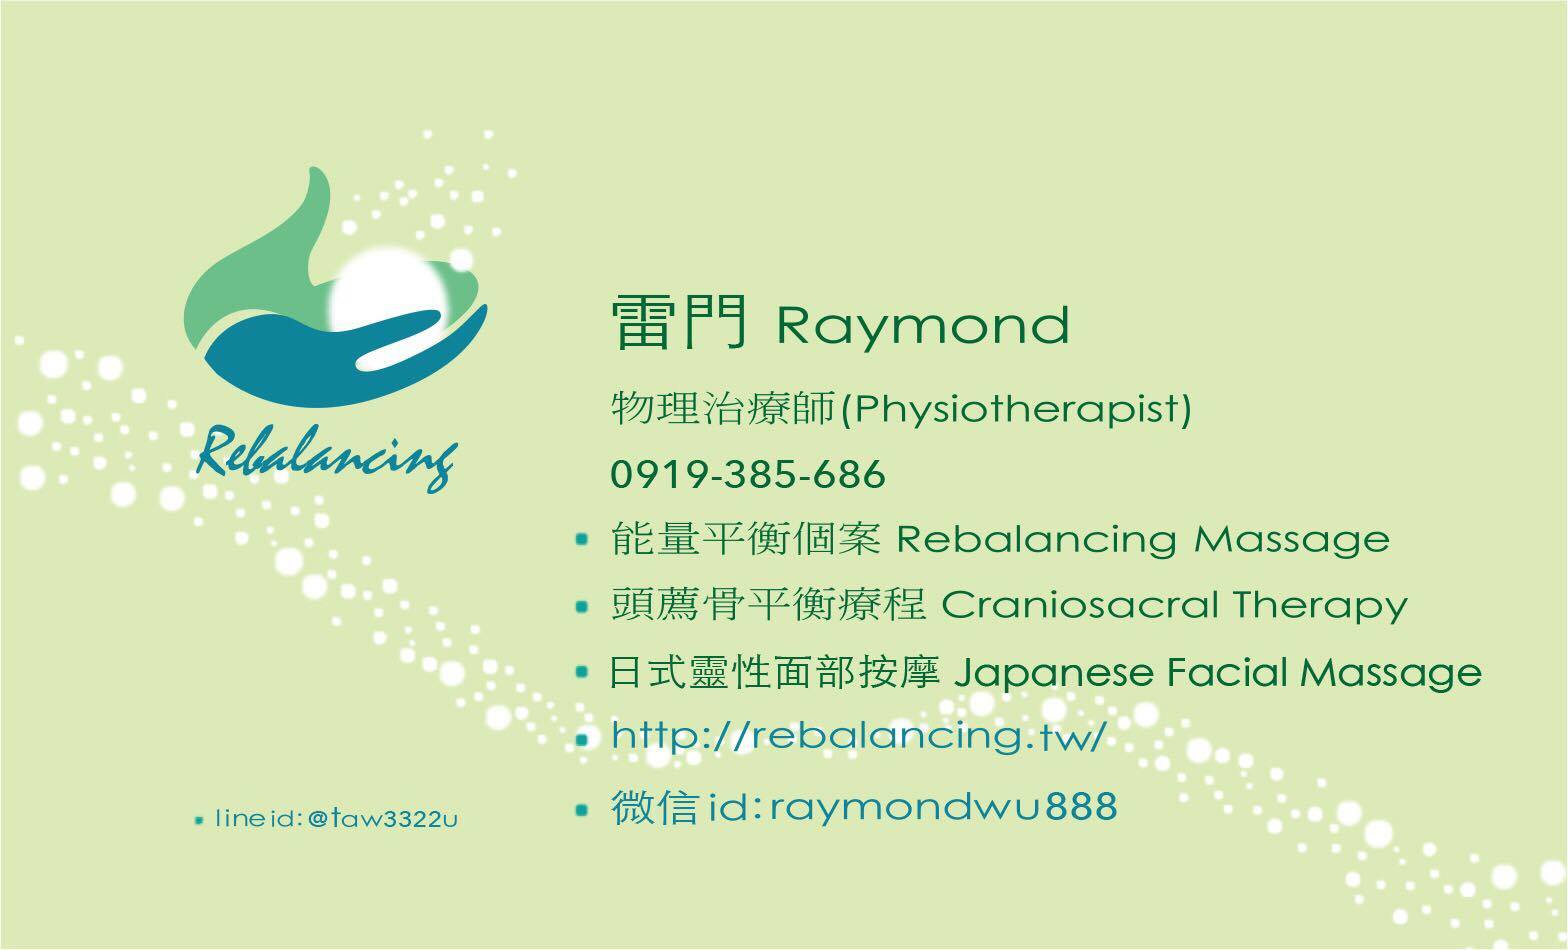 Raymond's card